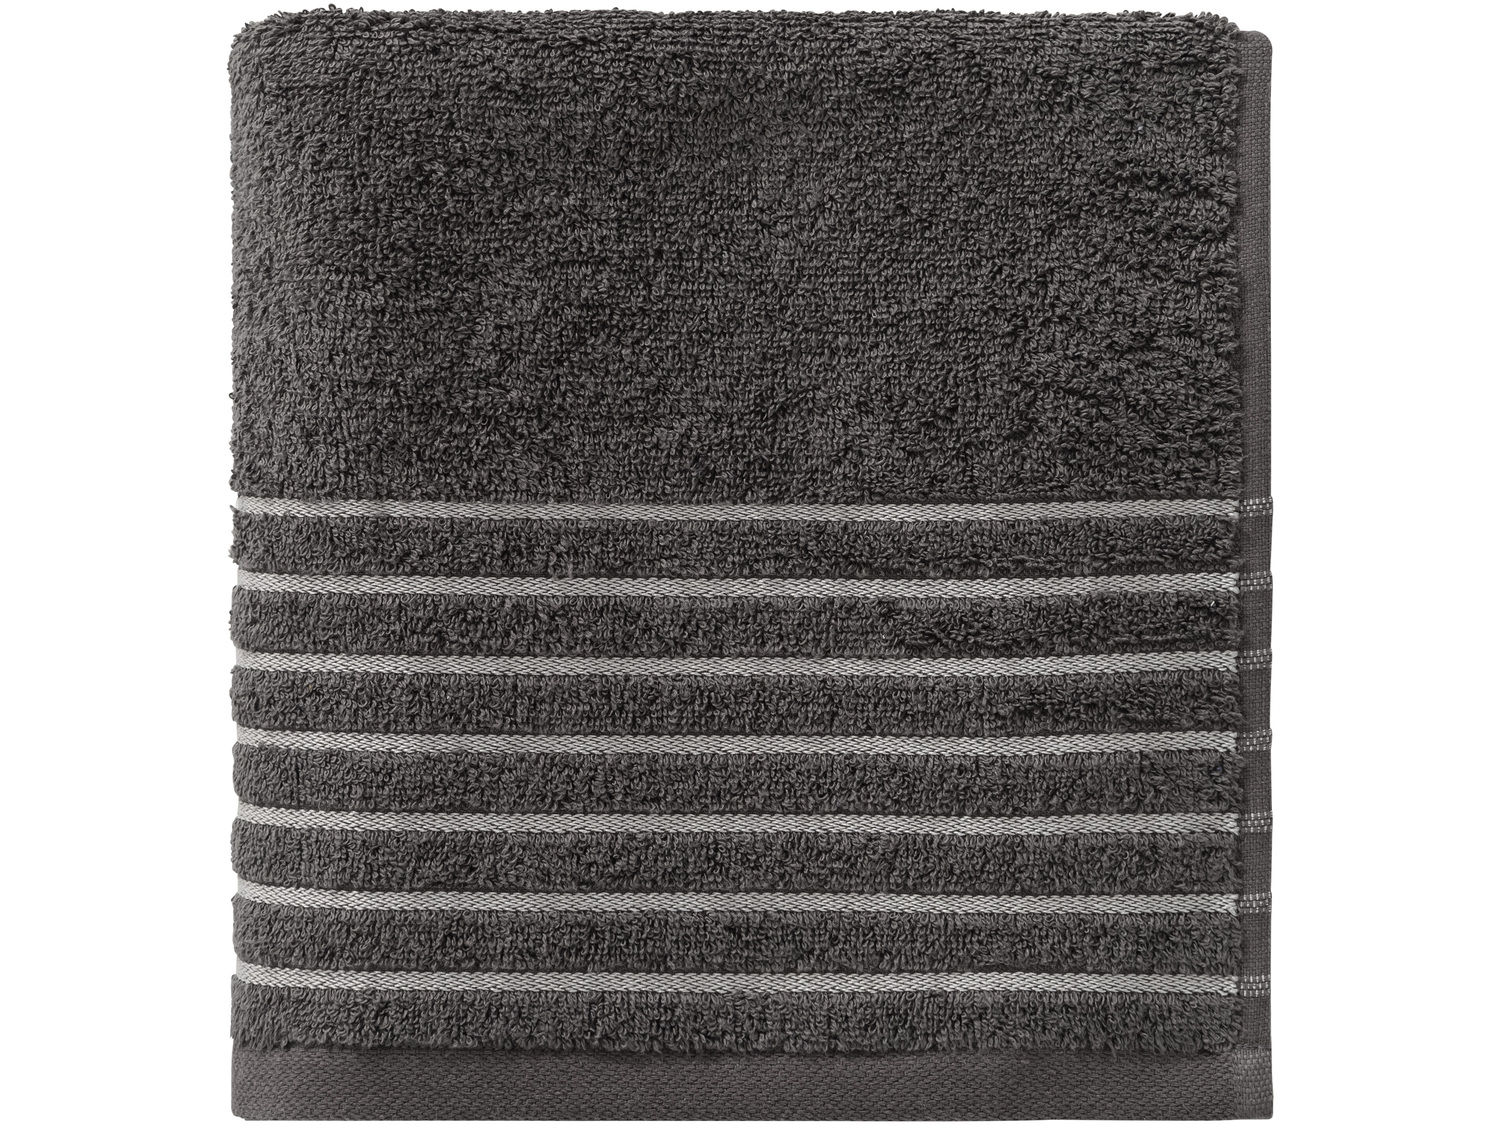 Ręcznik frotté 50 x 100 cm Miomare, cena 9,99 PLN 
- łagodne otulenie
- 400 g/m2
- ...